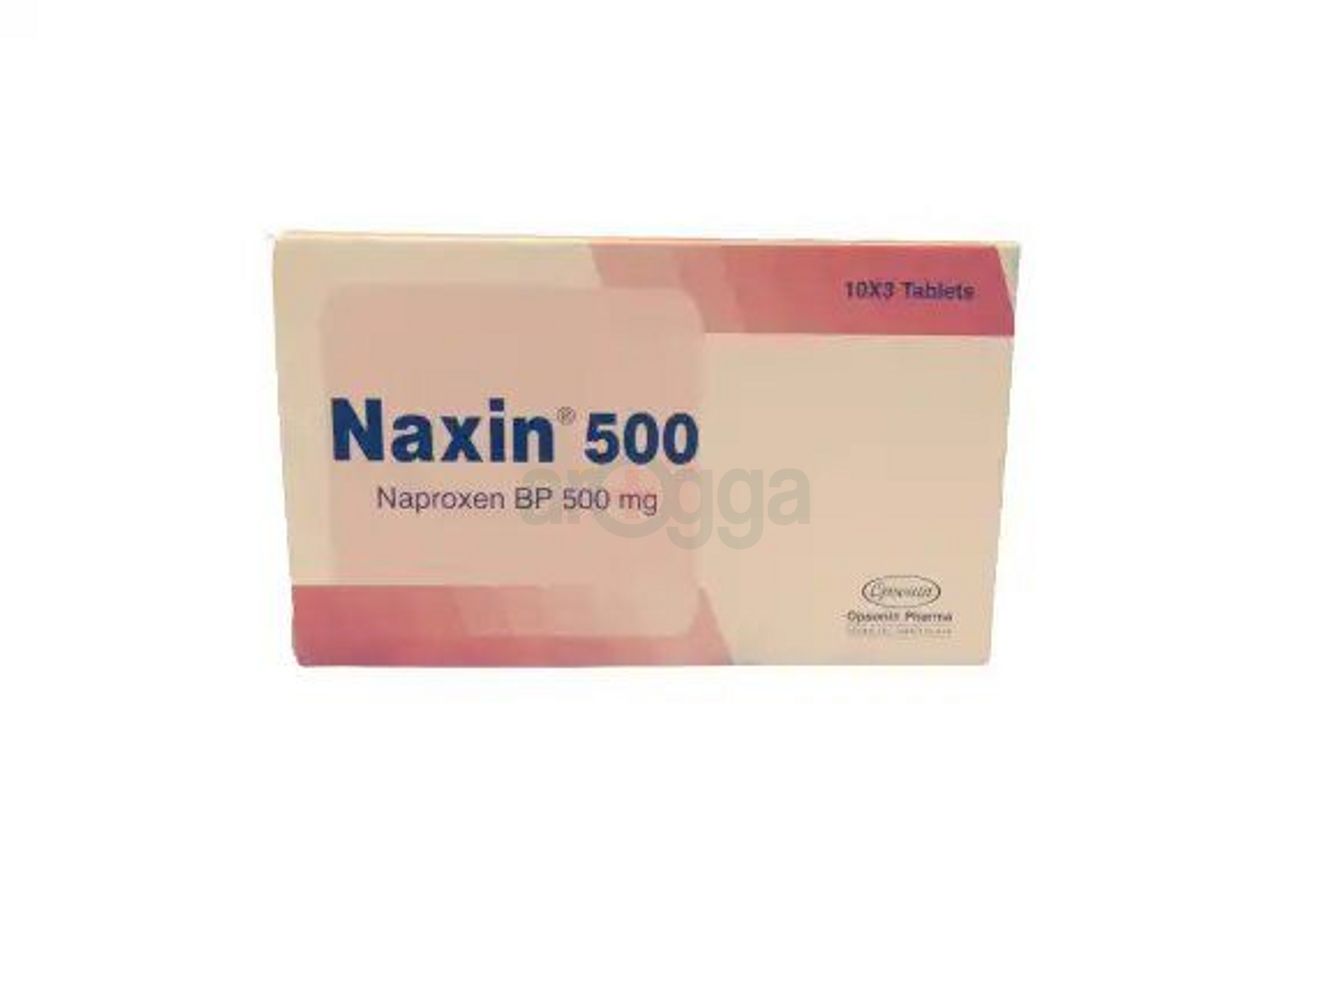 Naxin 500